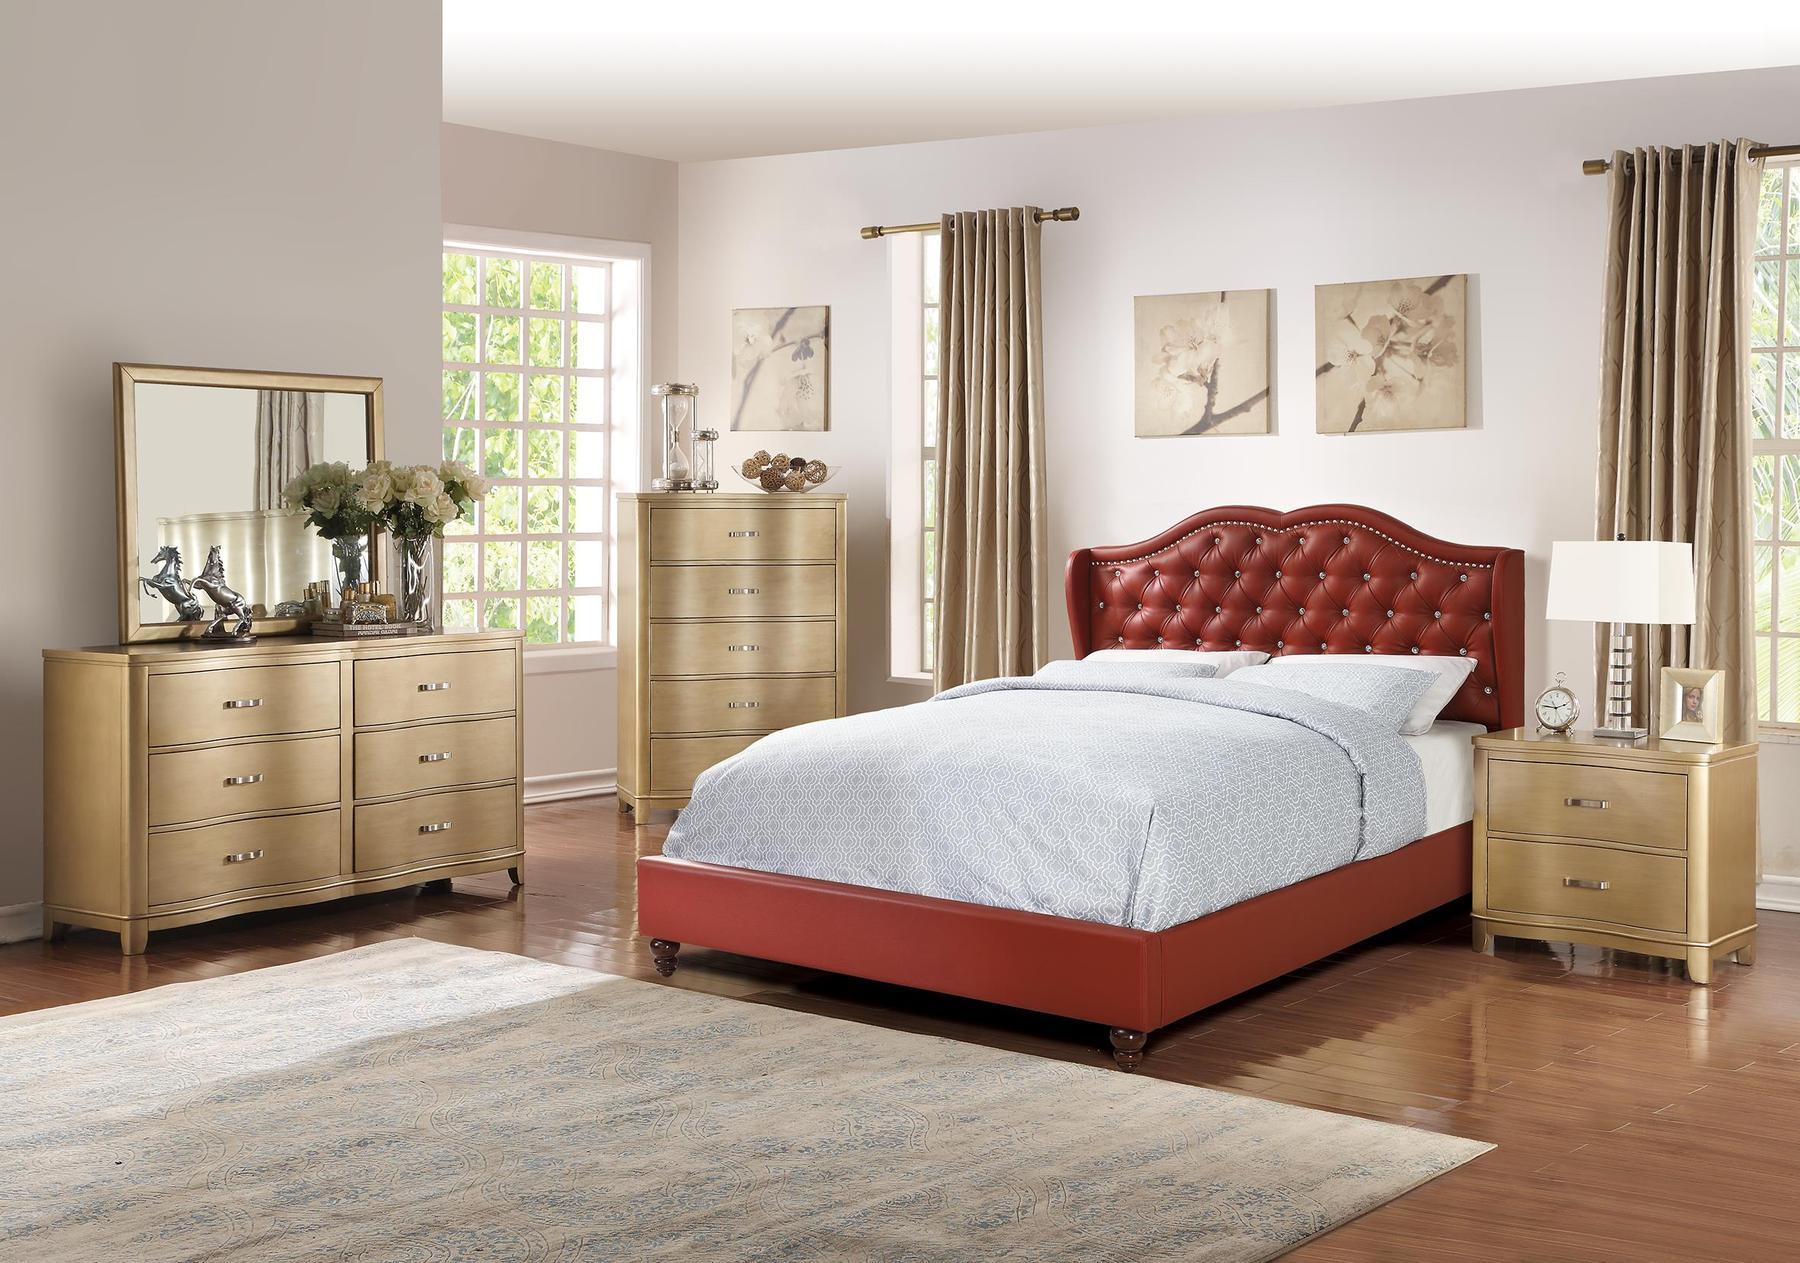 

    
Poundex Furniture F9366 Platform Bed Red F9366EK
